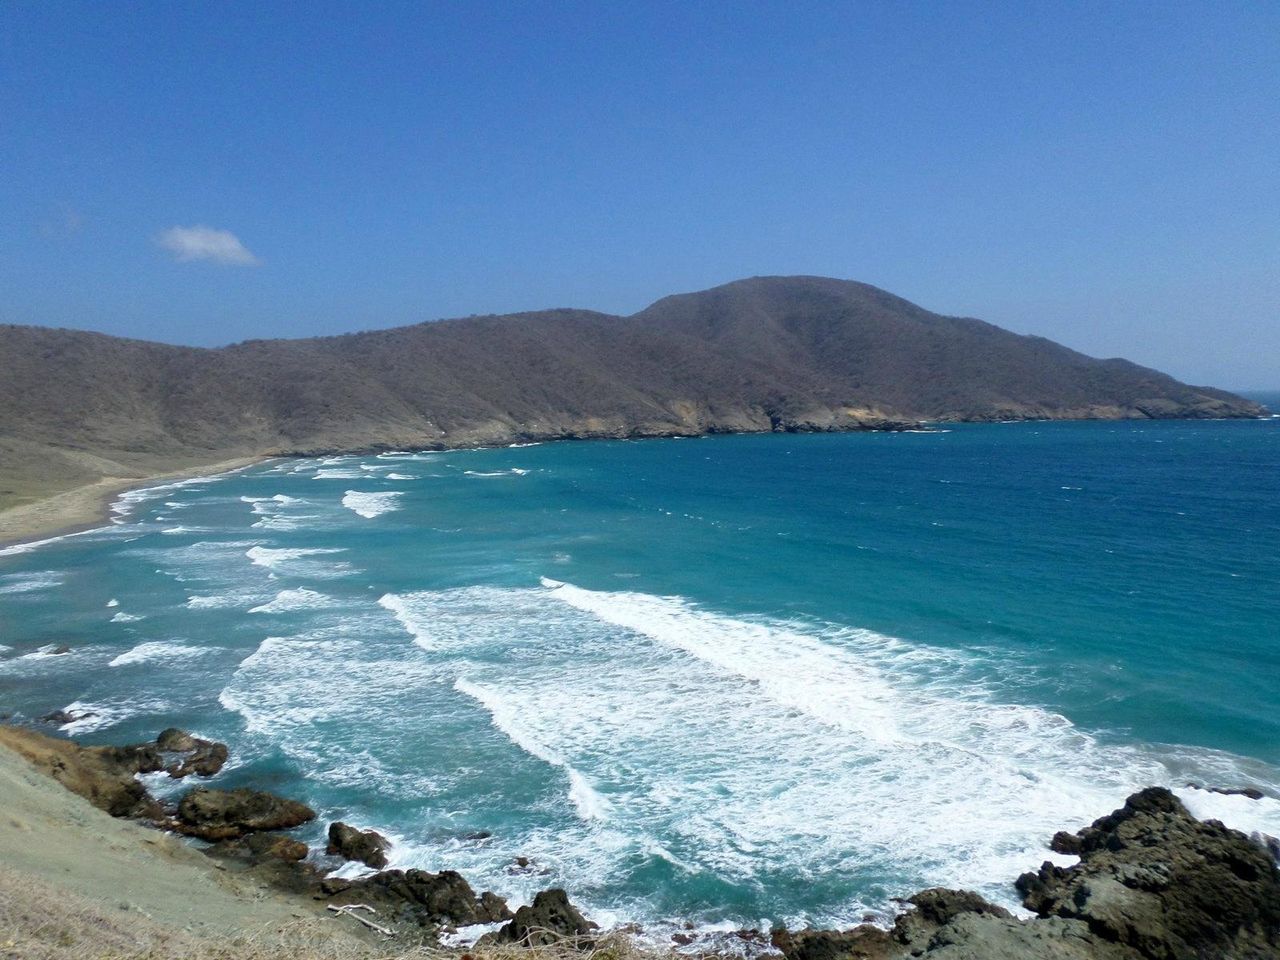 Entdecken Sie das Paradies: Playa Cristal – die ruhige Flucht, nach der Sie sich gesehnt haben.